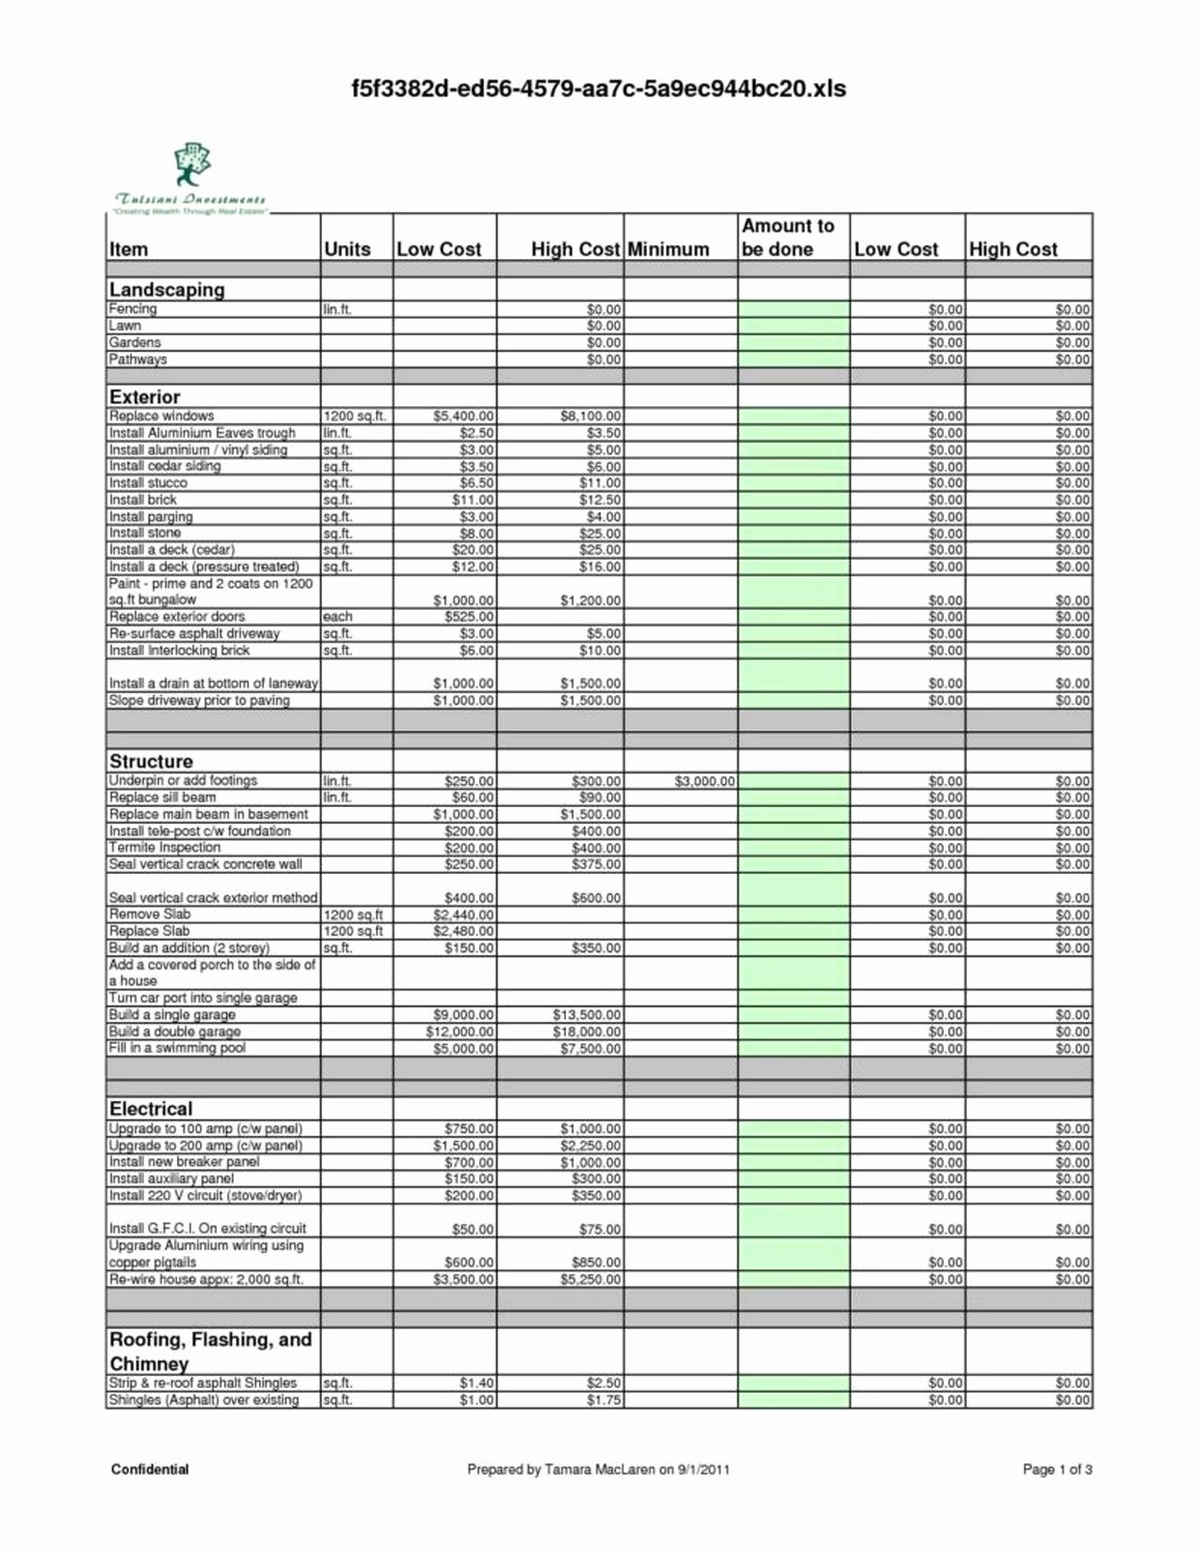 Free Excel Construction Templates Unique Construction Cost Estimate Template Excel